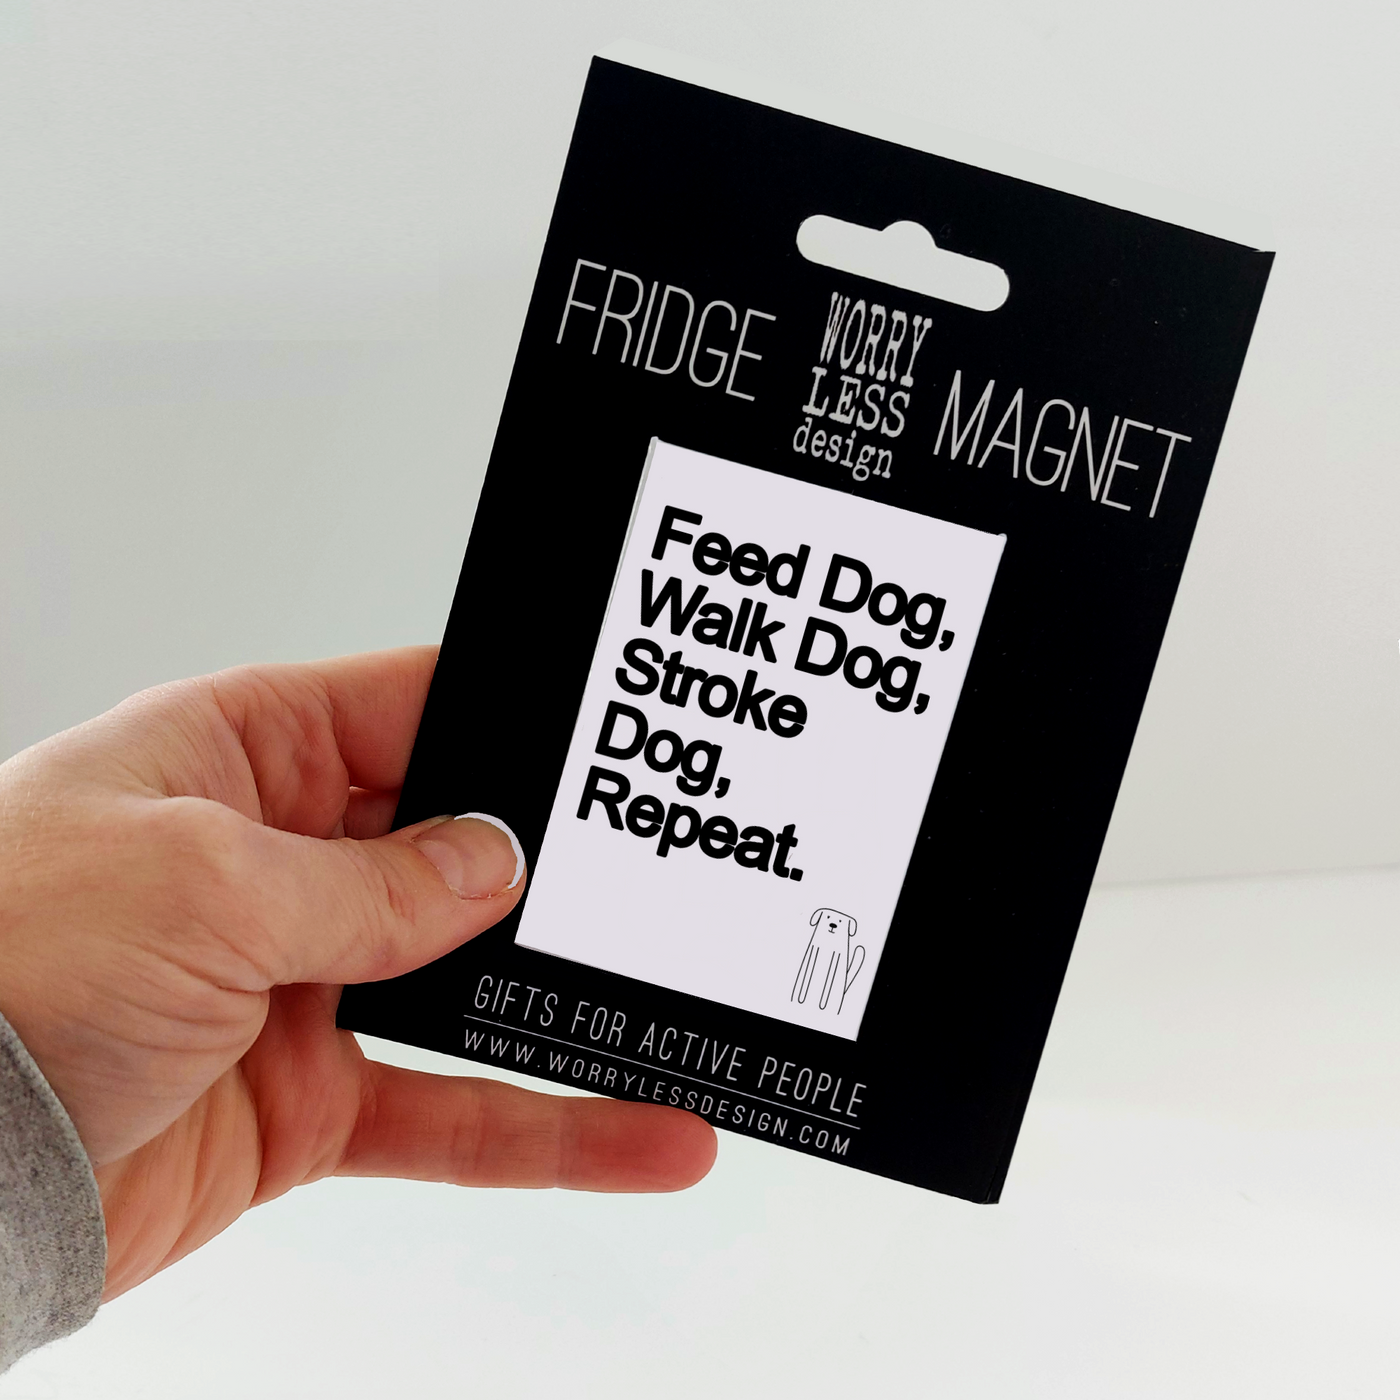 Feed Dog, Walk Dog…. - Fridge Magnet